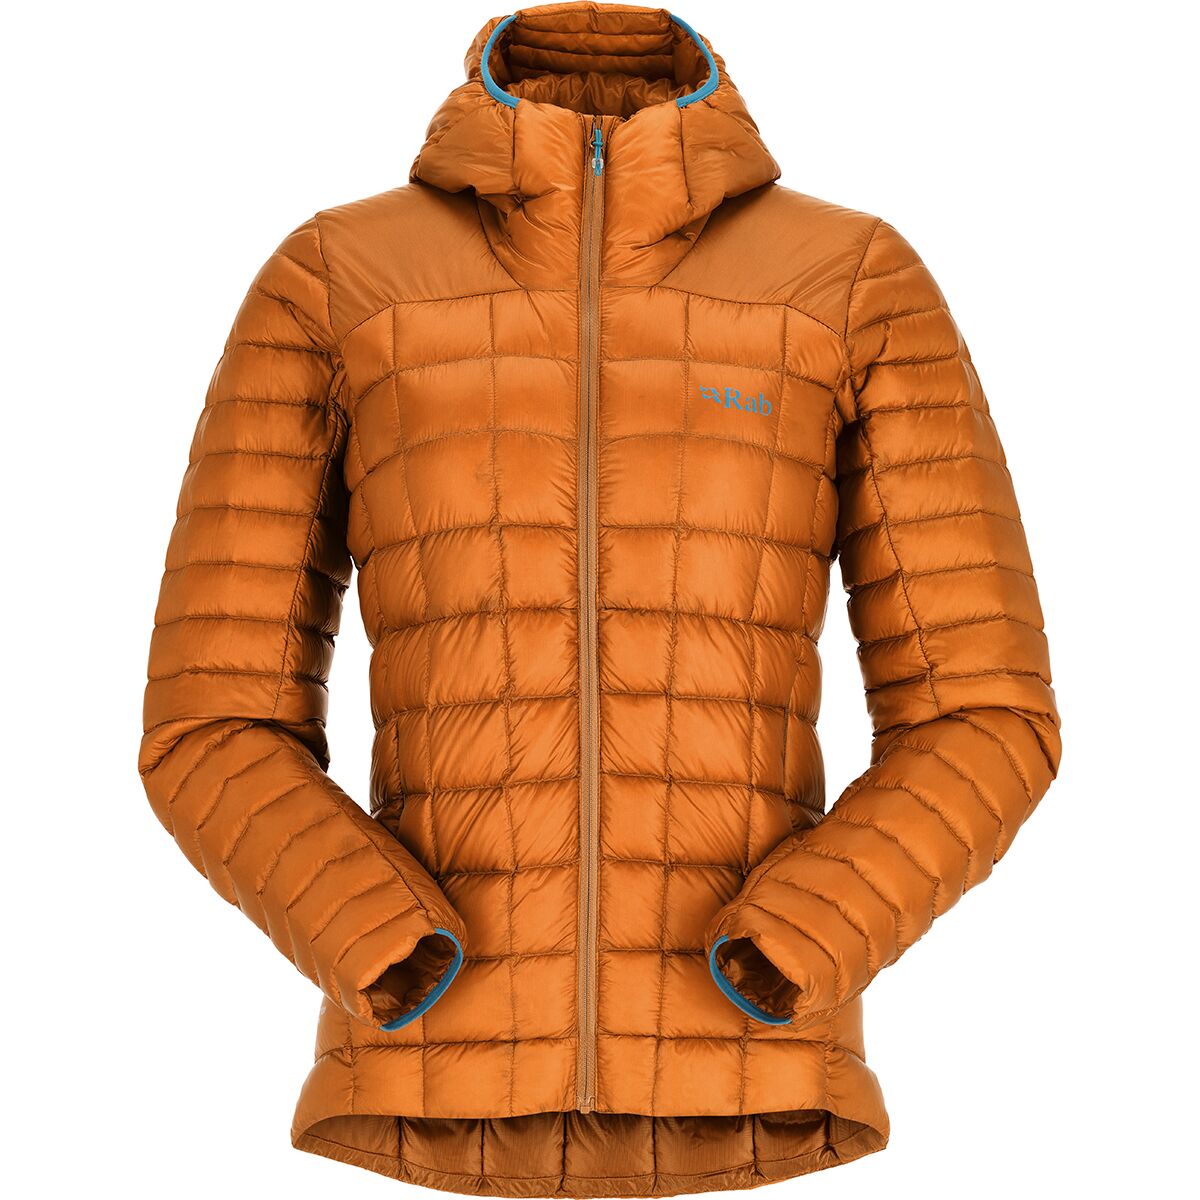 Rab Mythic Alpine Light Jacket - Women's - Clothing